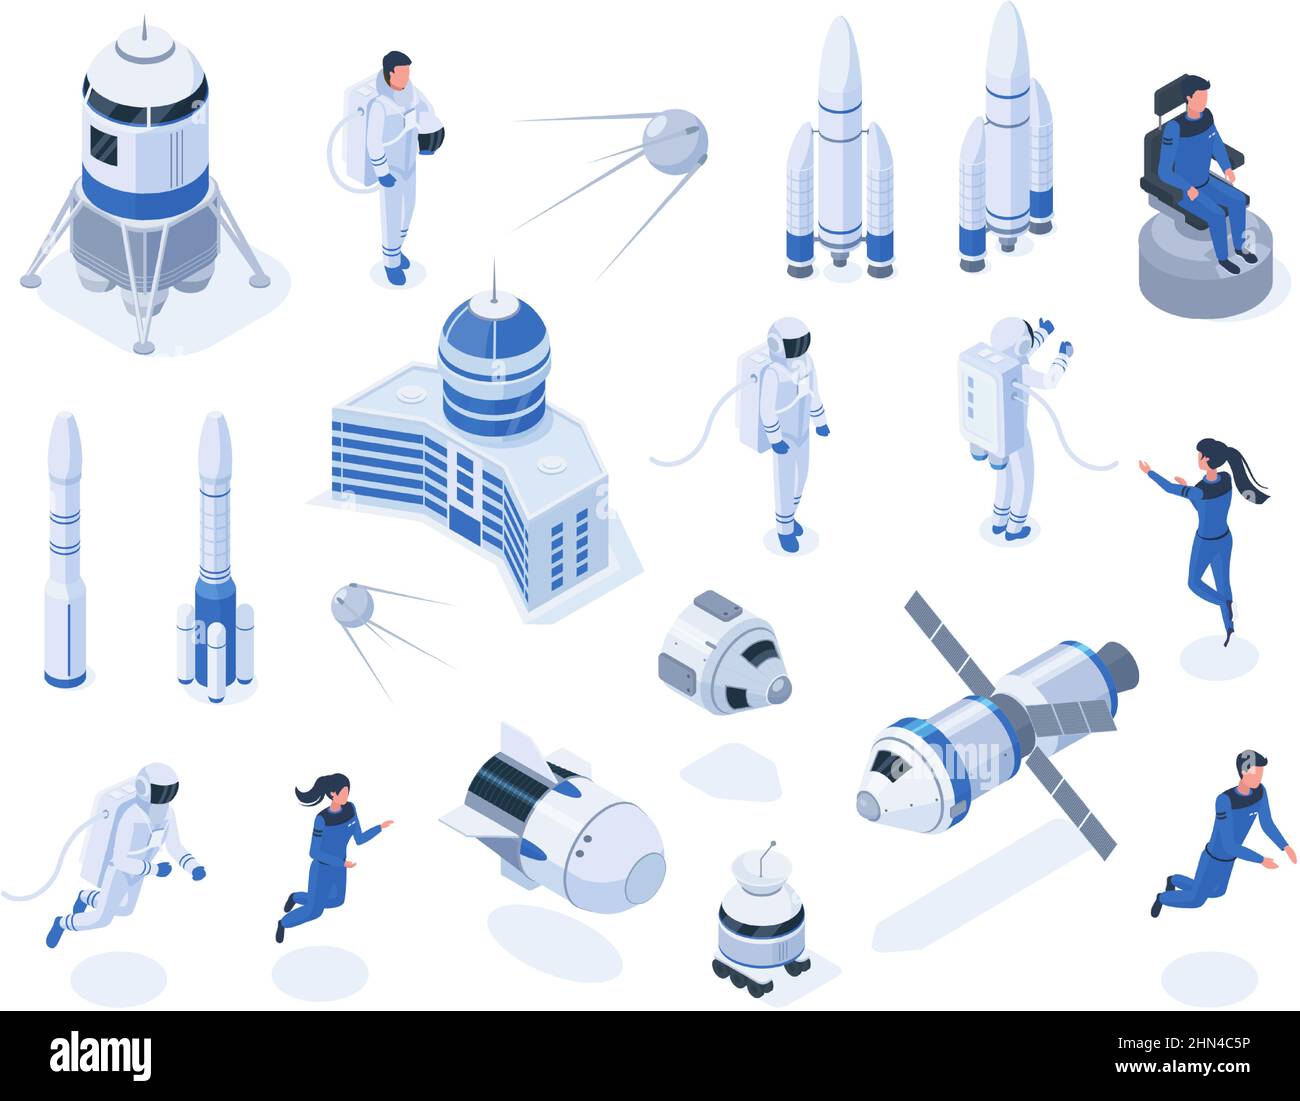 Corpi spaziali isometrici, astronauti, satelliti e veicoli spaziali. Esplorazione dello spazio esterno, rover lunare e set di illustrazioni vettoriali razzi. Spazio Illustrazione Vettoriale